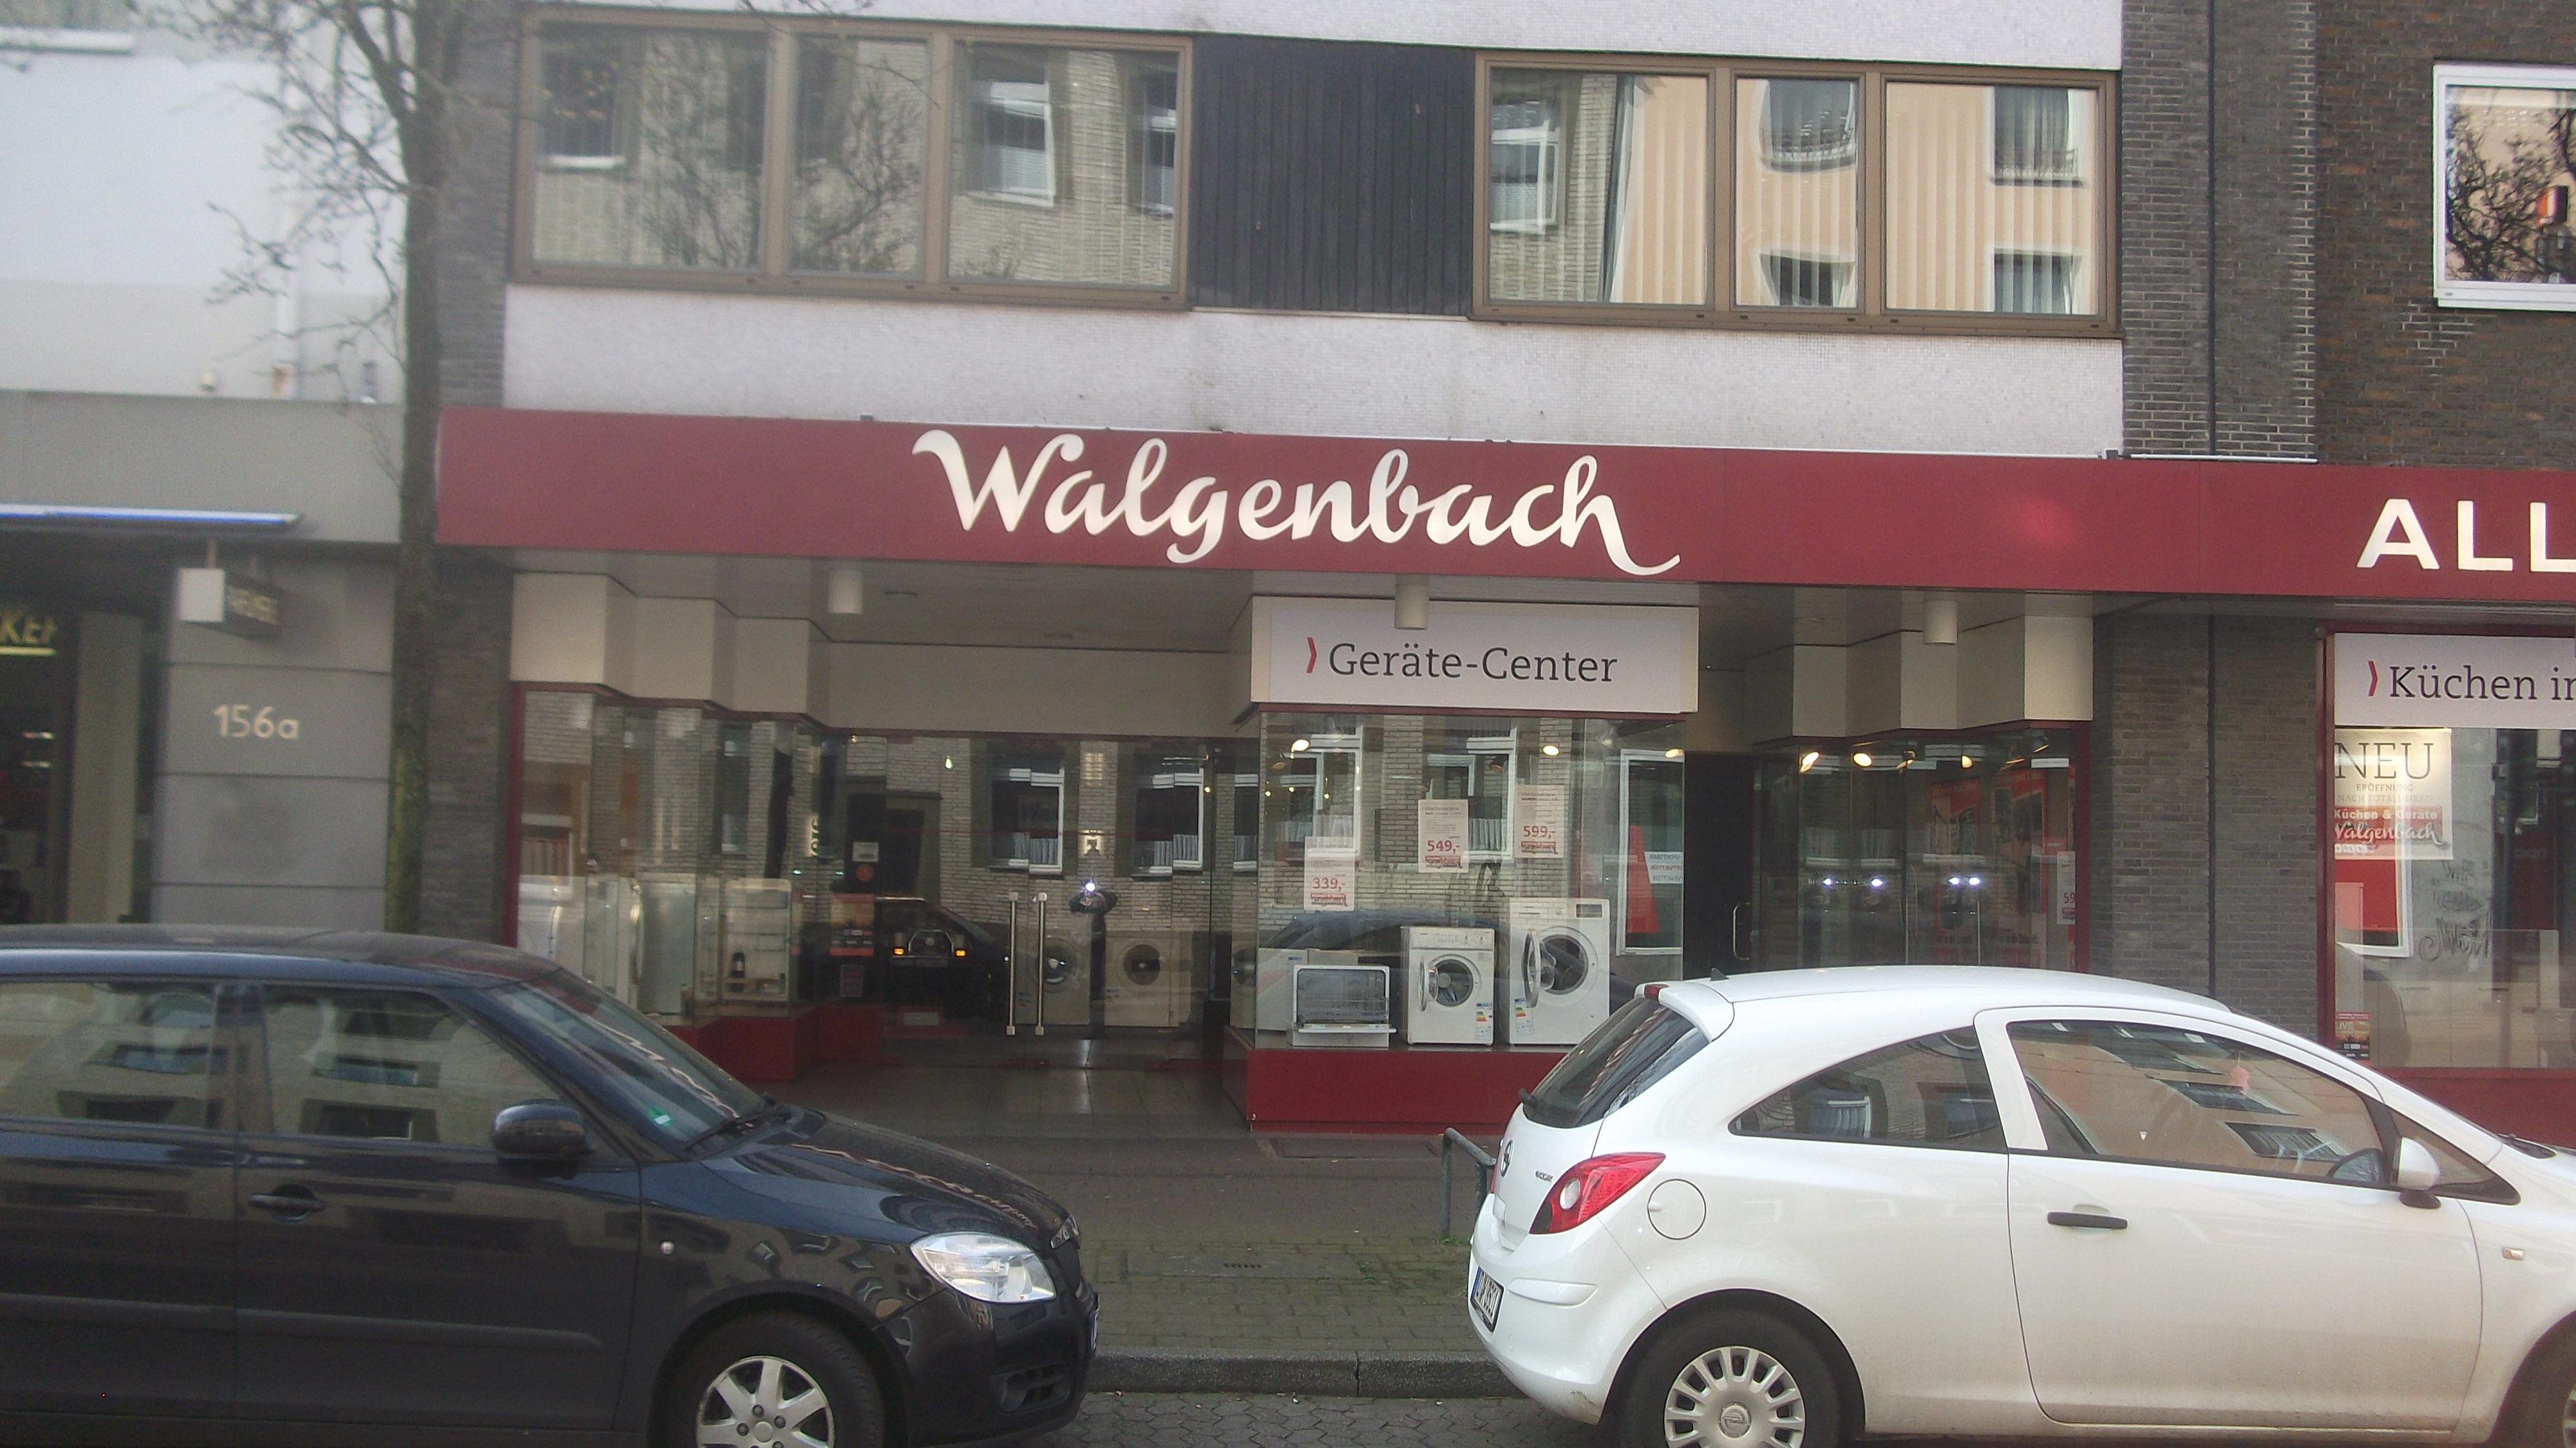 Bild 1 Walgenbach Küchen&Geräte in Düsseldorf